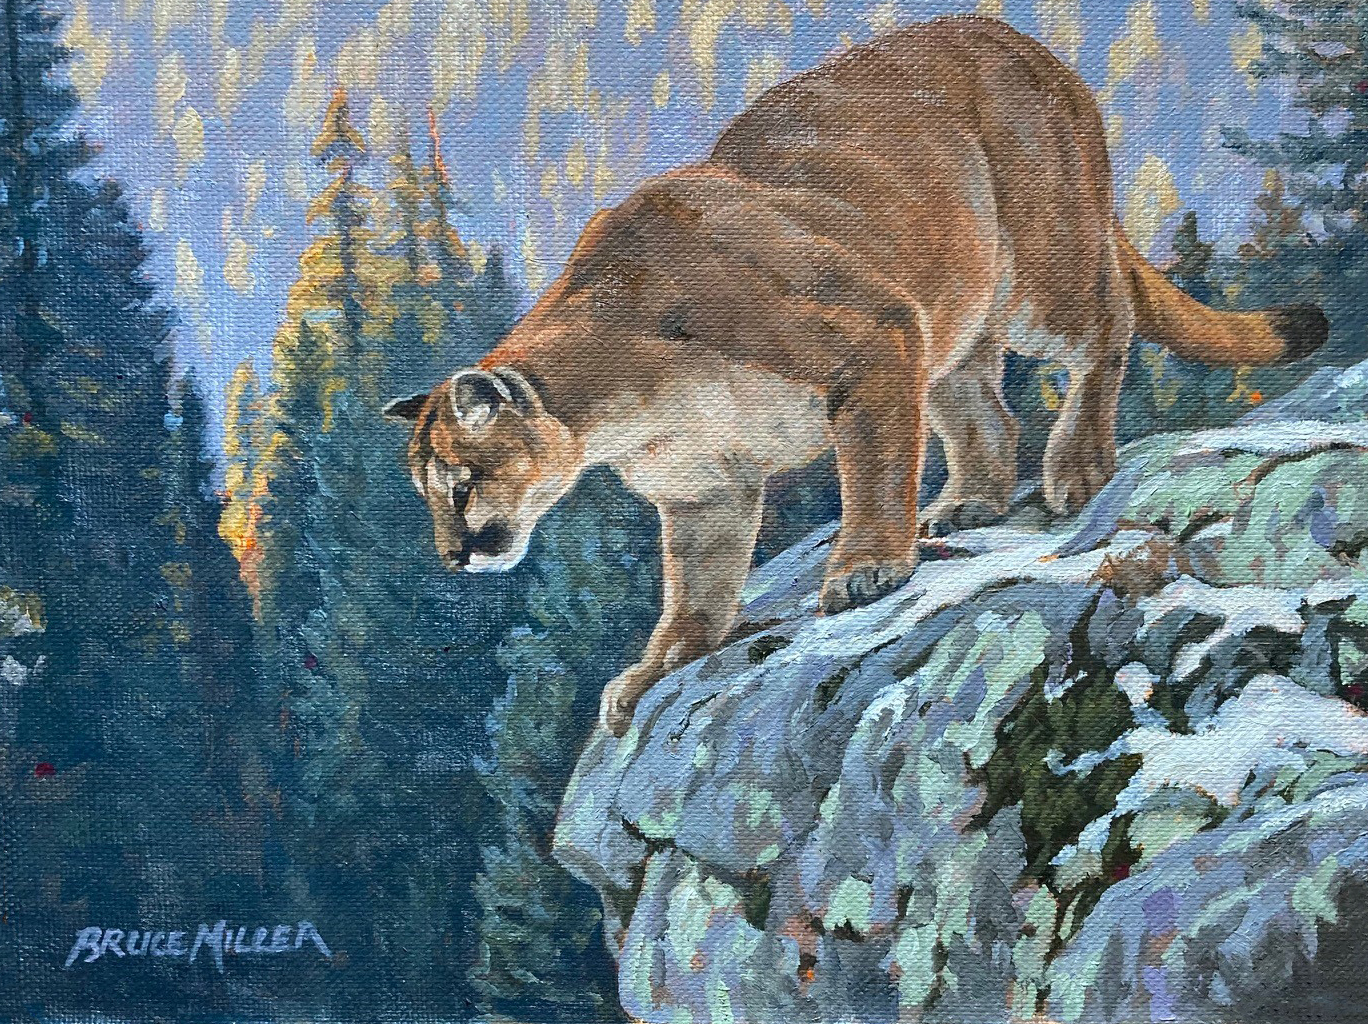 BM2 – Cougar © Bruce Miller